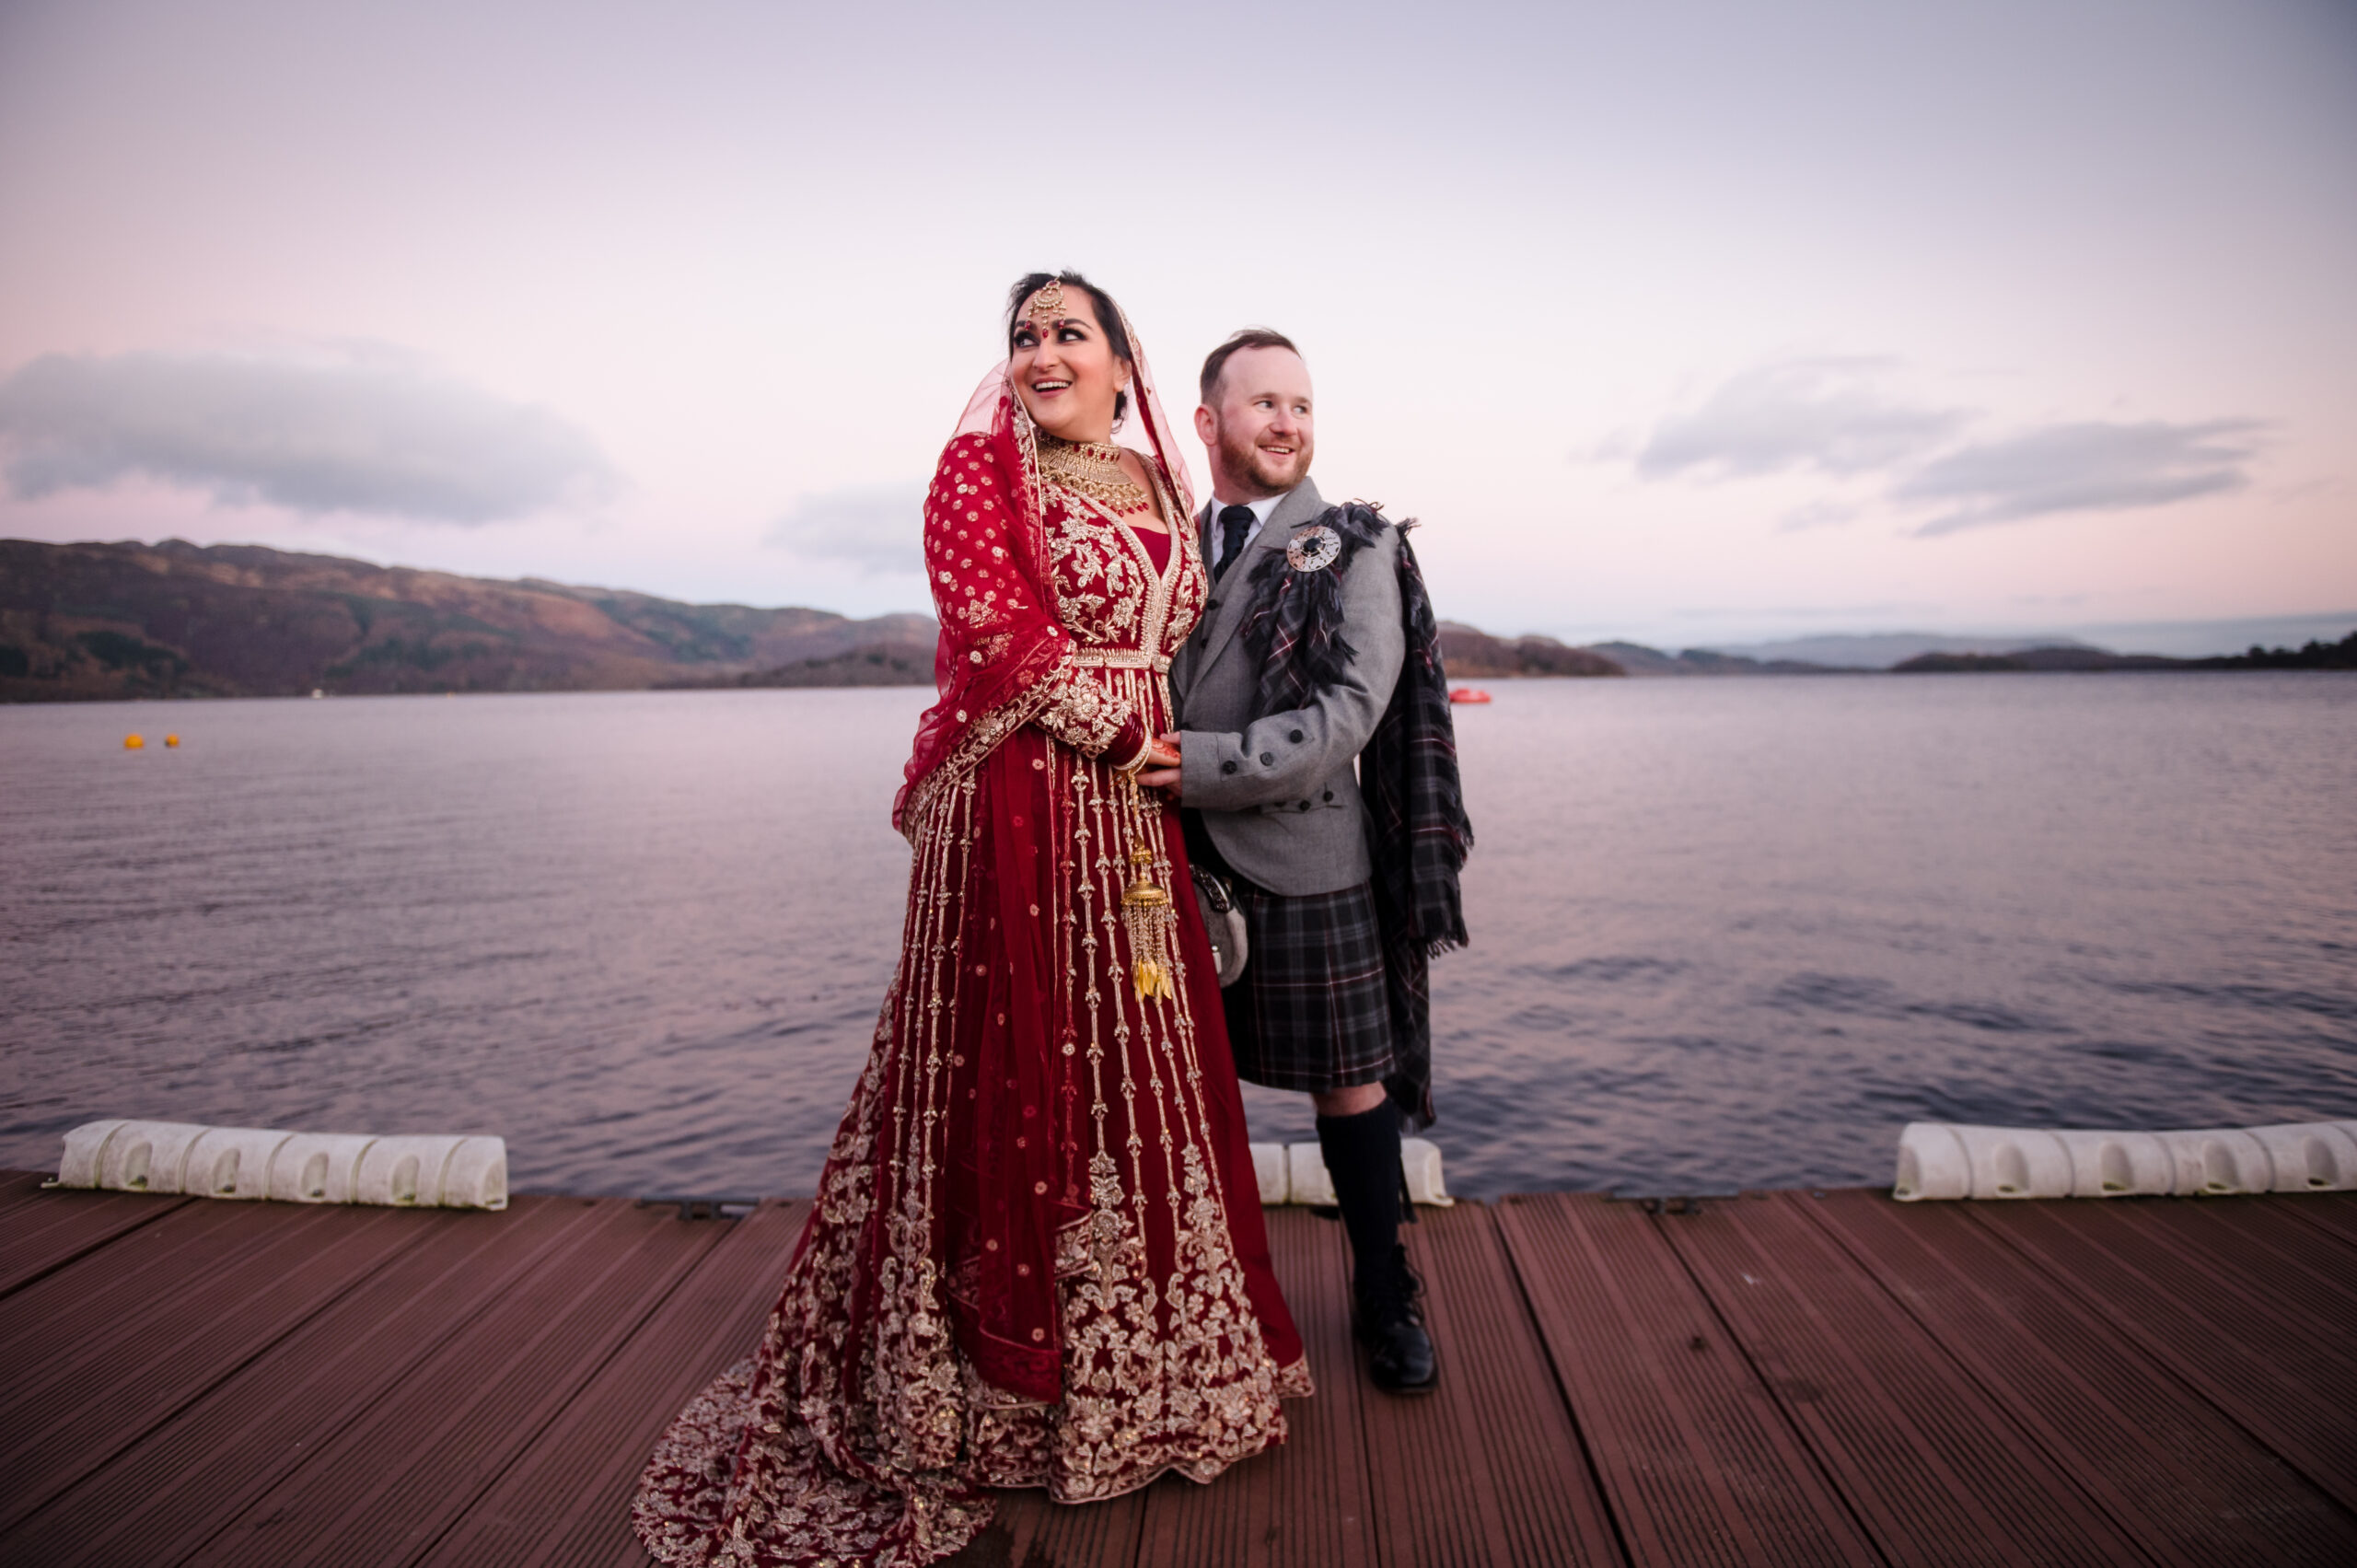 Loch Lomond wedding photographers Andi Watson Photography